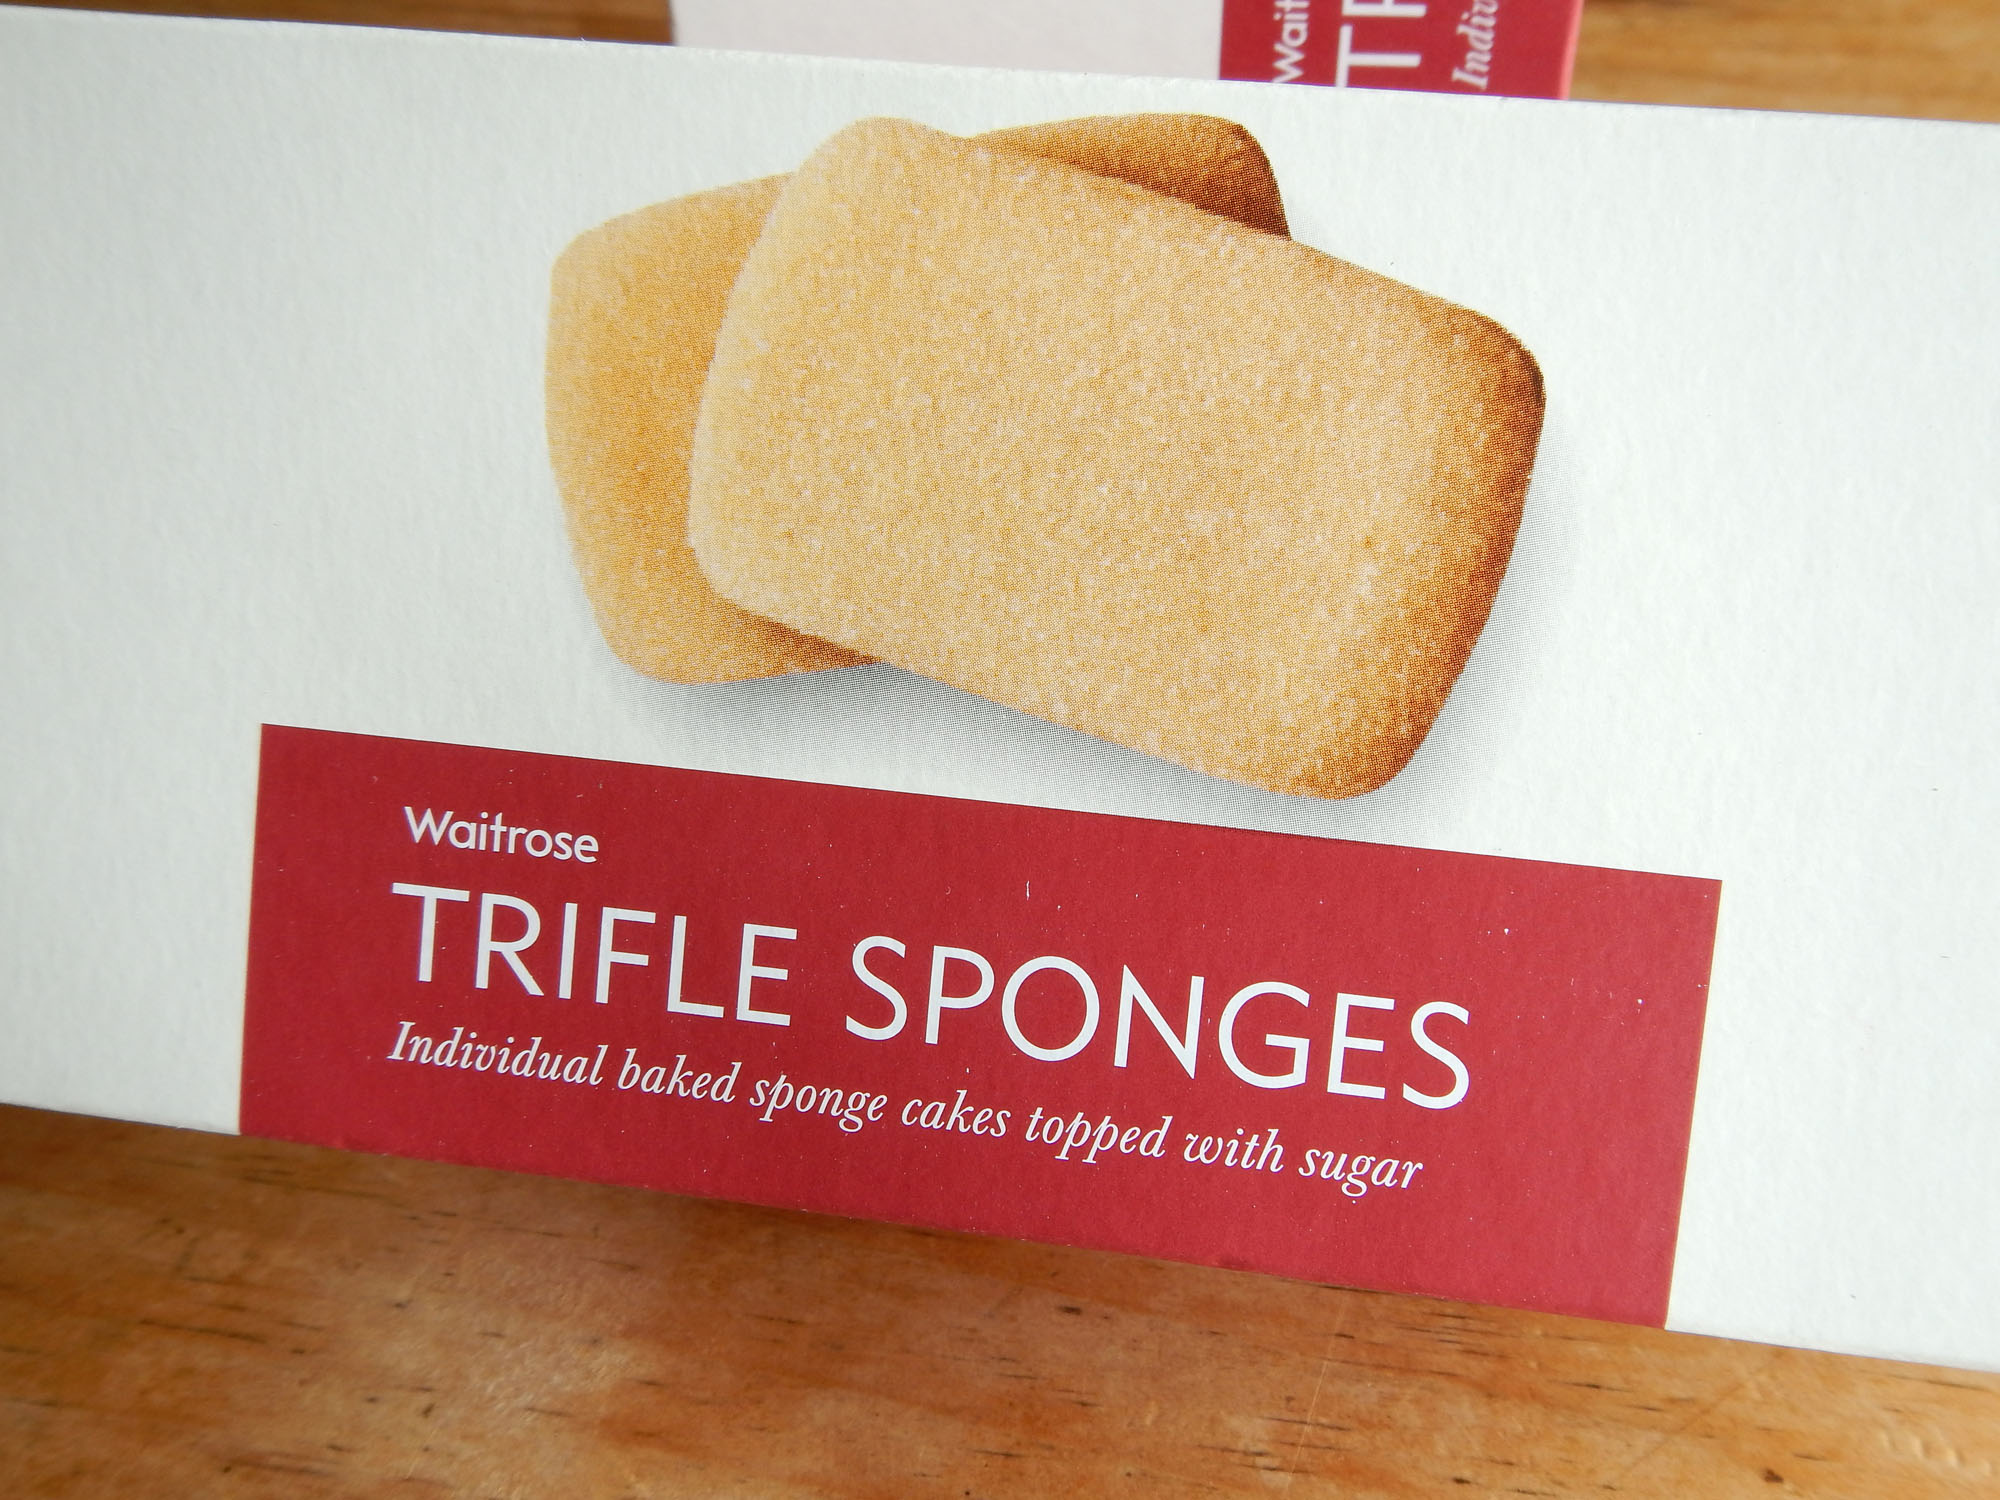 Trifle sponges